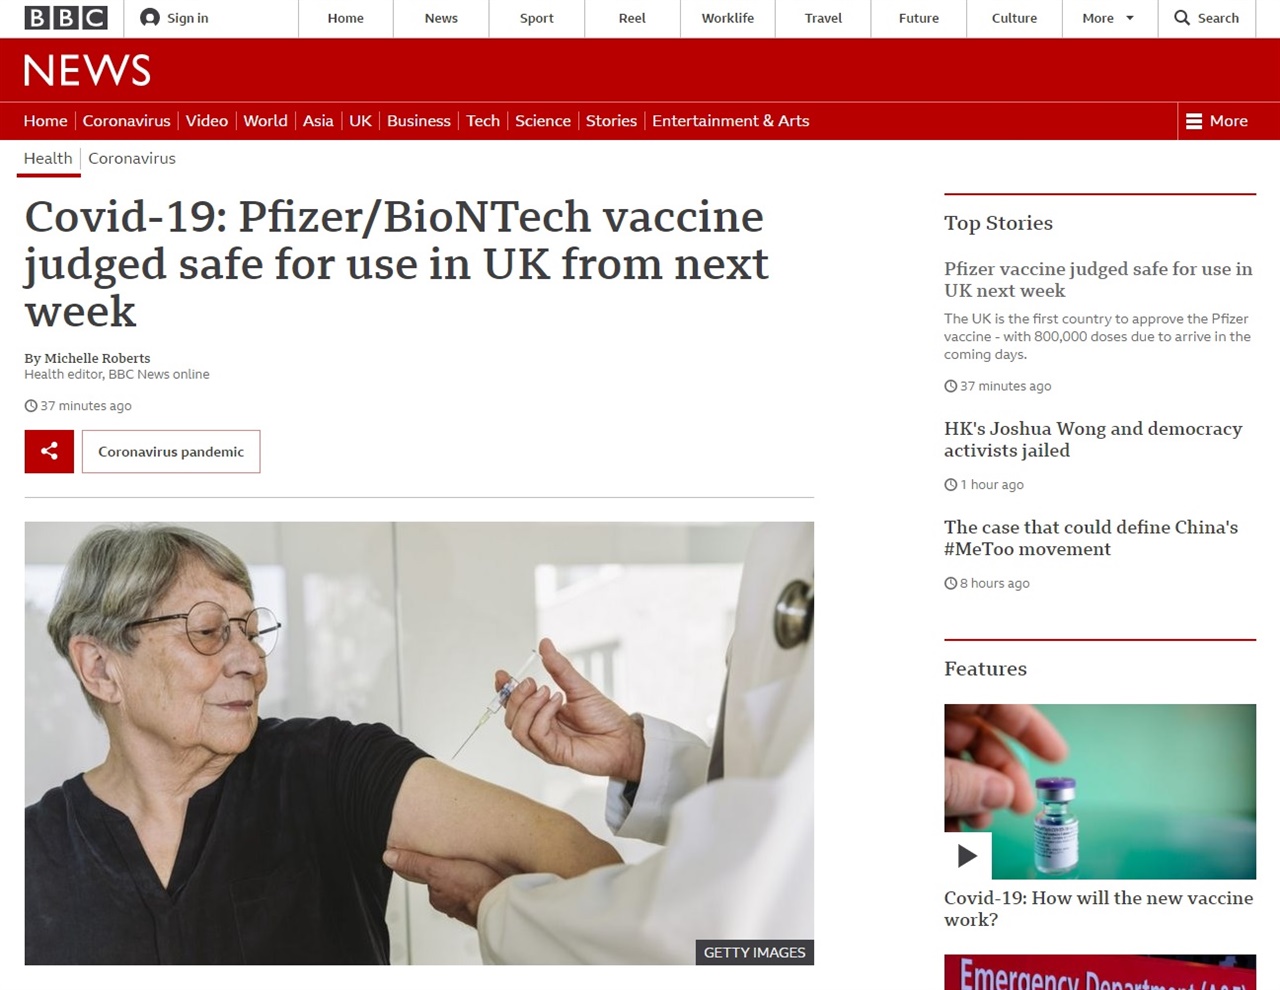  영국 정부의 코로나19 백신 접종 계획을 보도하는 BBC 뉴스 갈무리.